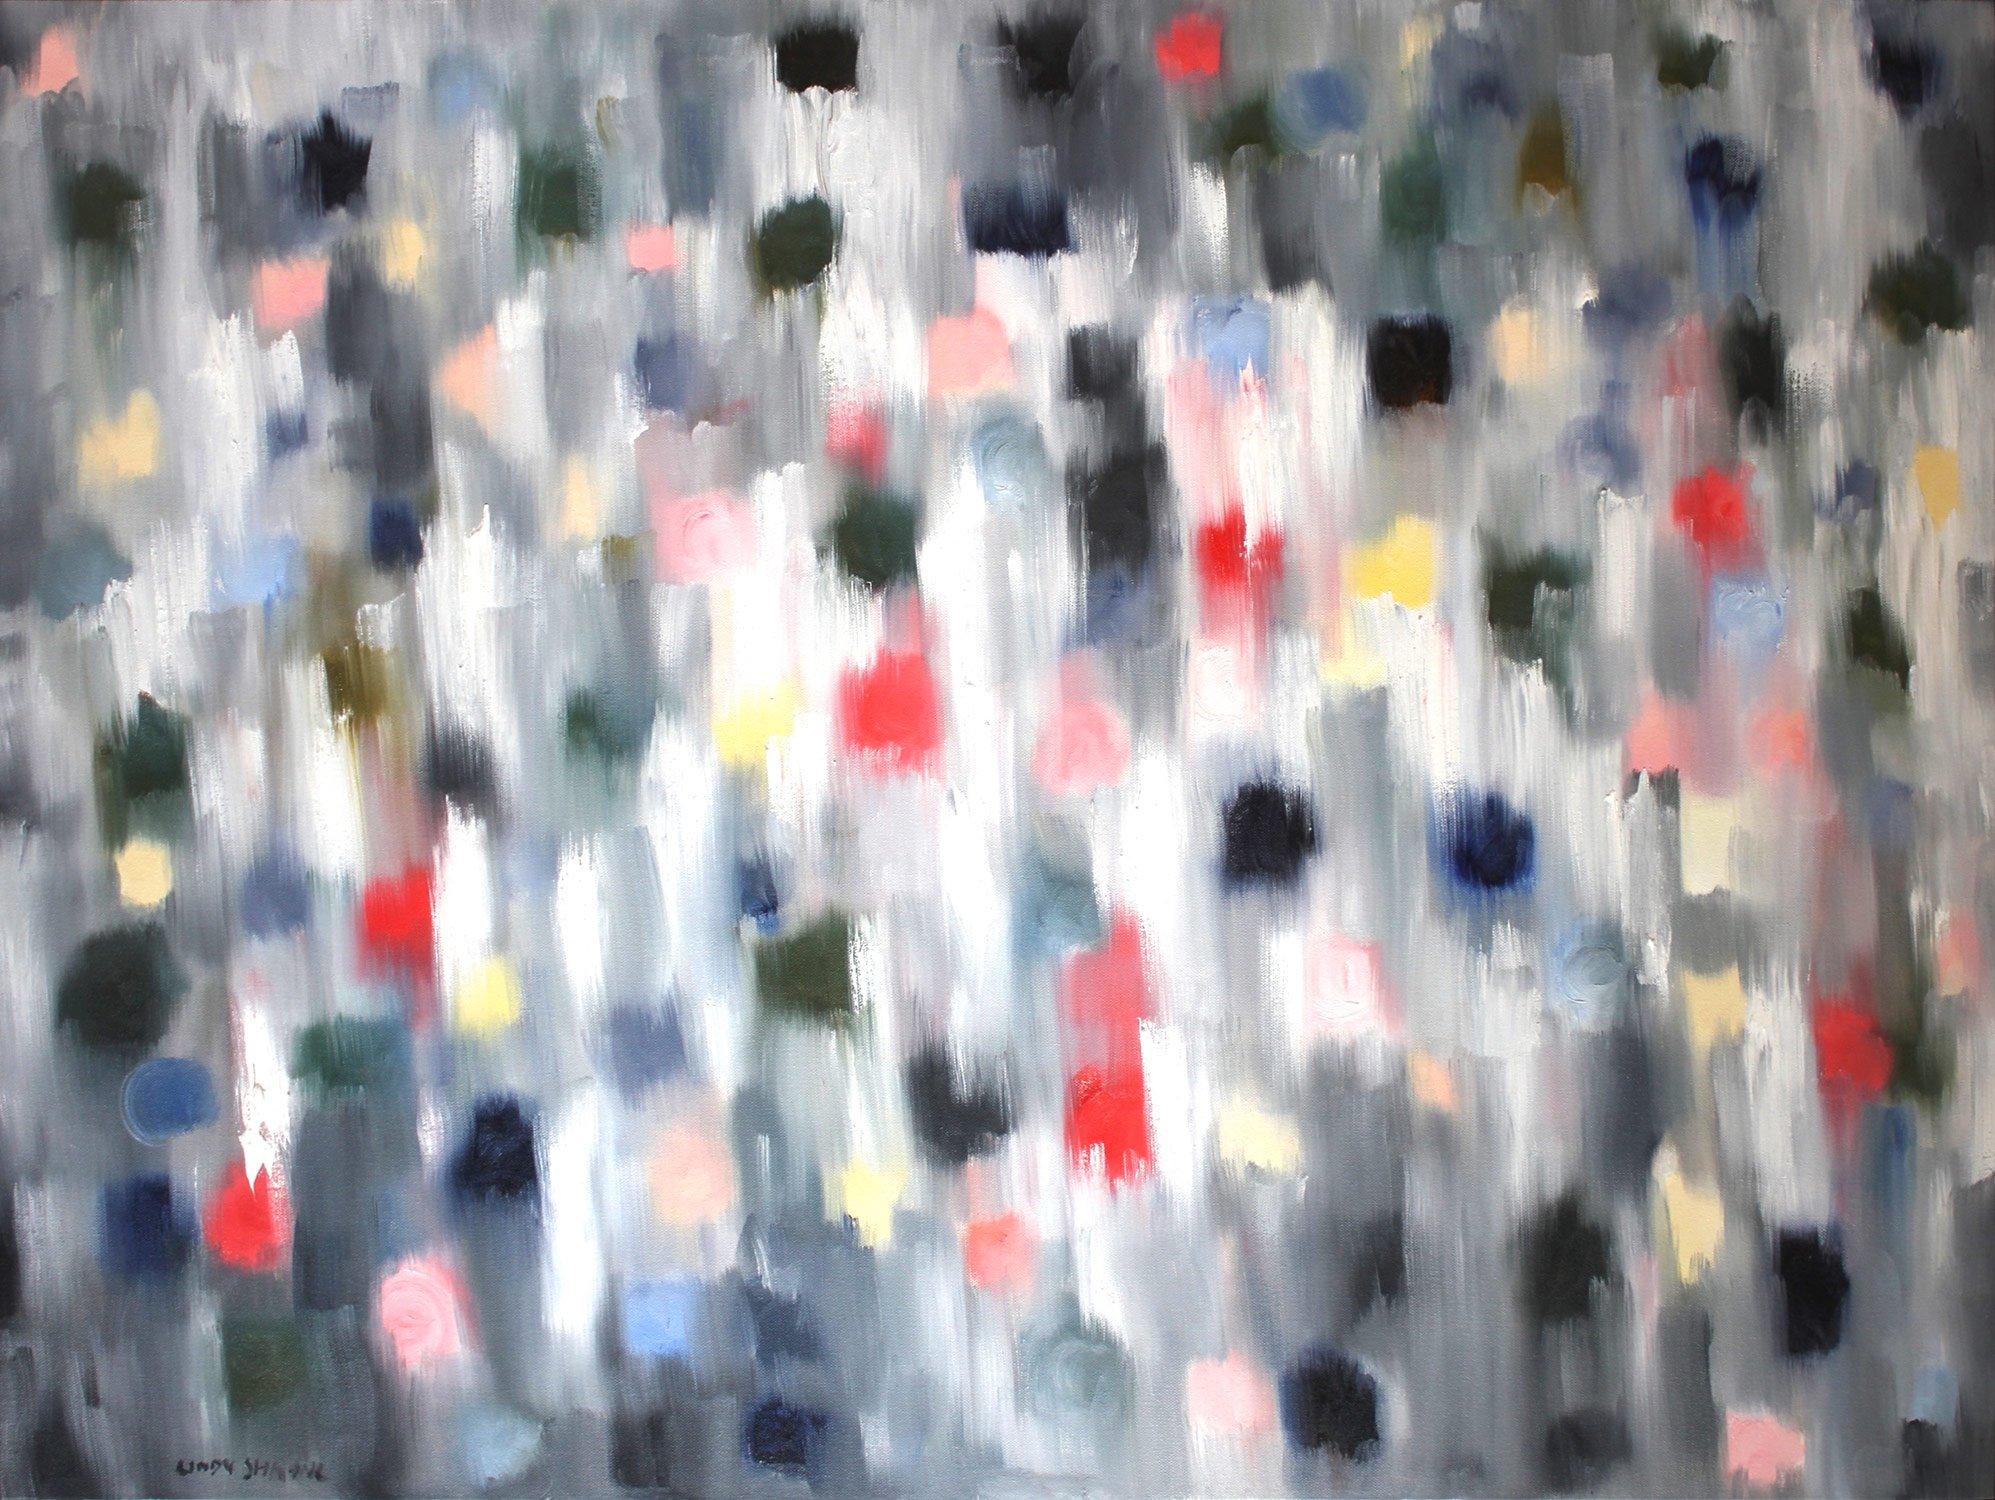 Abstract Painting Cindy Shaoul - "Dripping Dots - Monaco Nights" - Peinture à l'huile contemporaine colorée sur toile